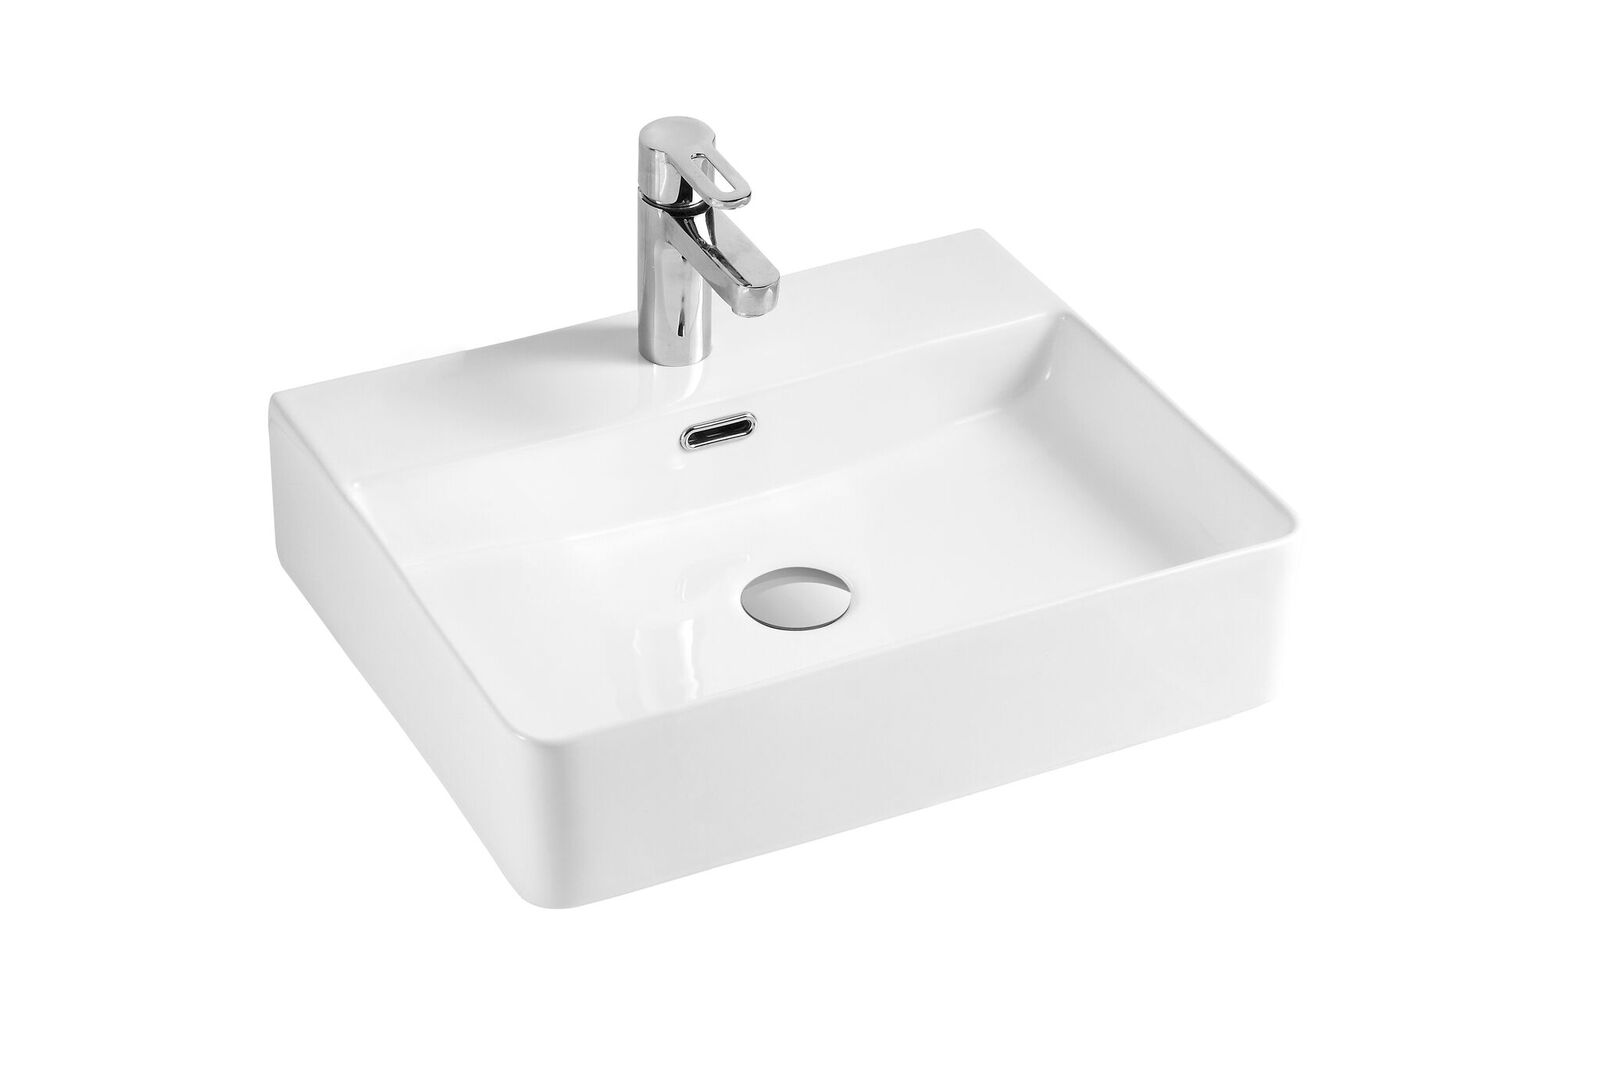 Ceramic rectangular vessel  sink 19 7/10